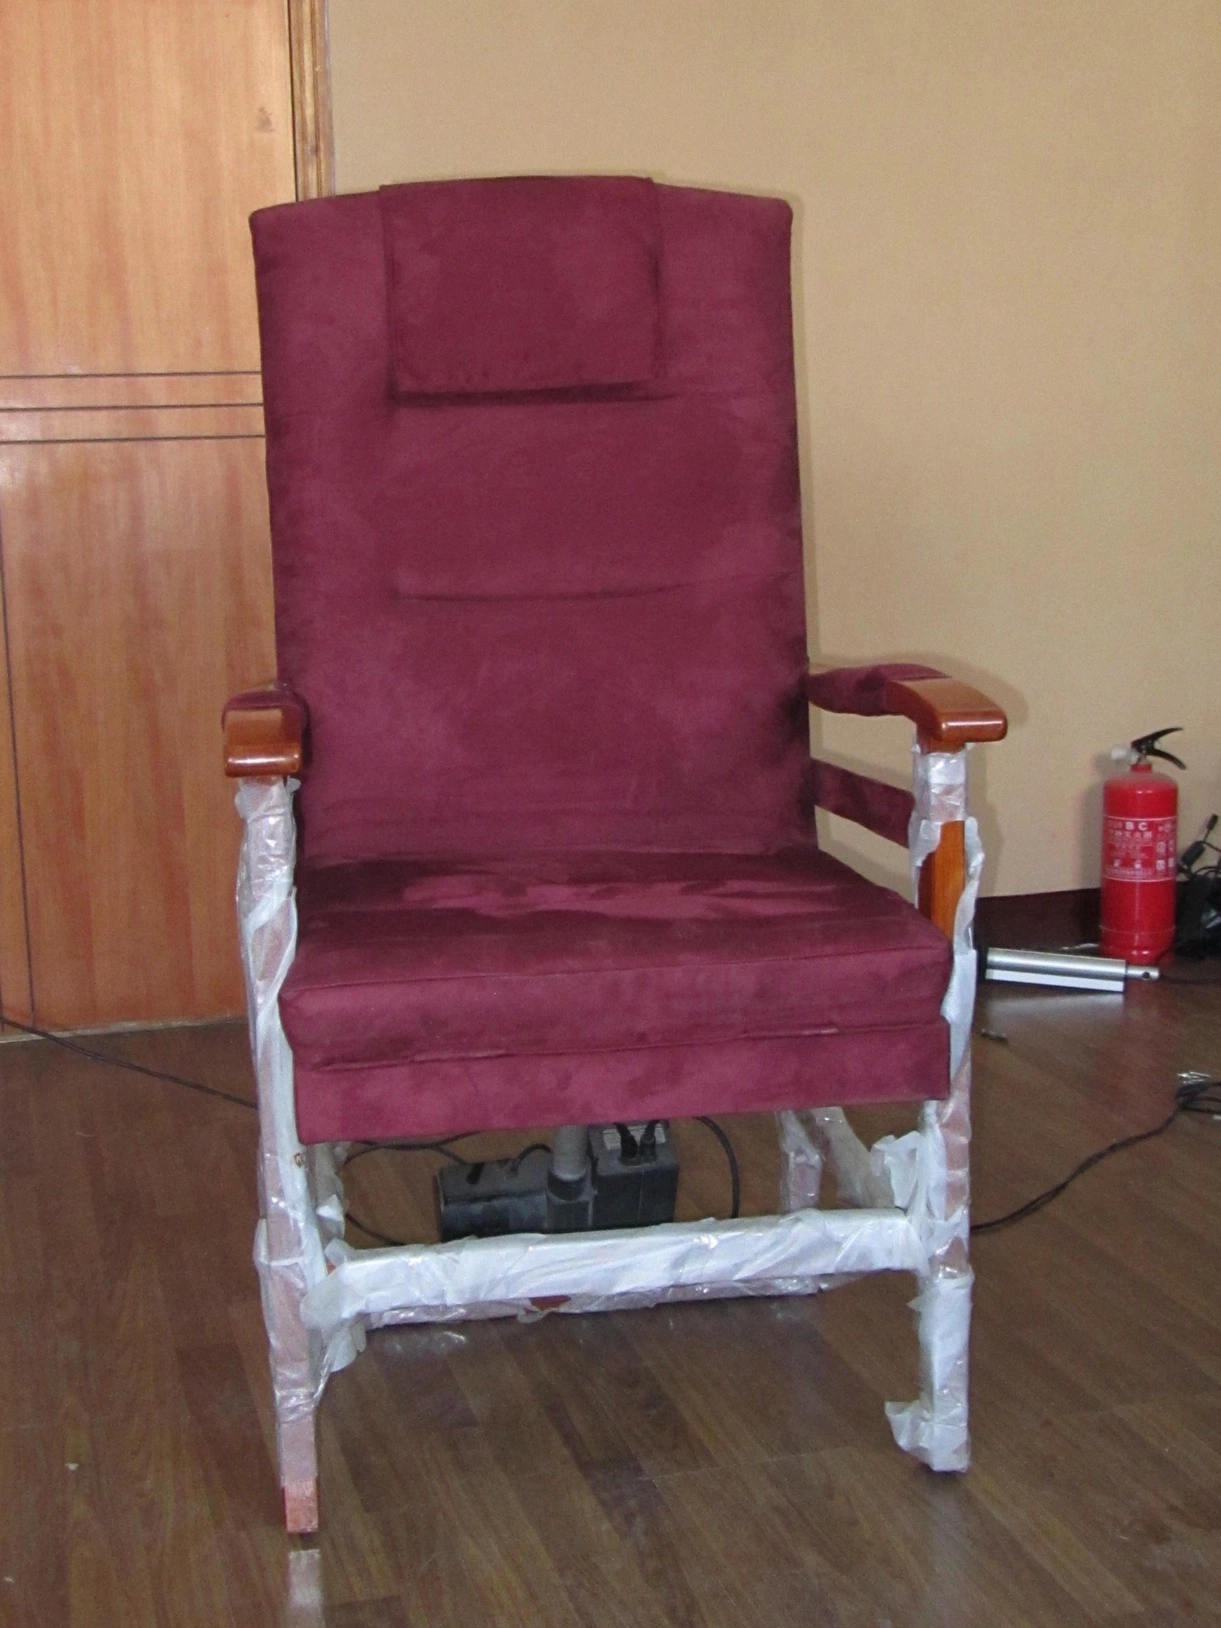 كرسي كهربائي للرفع مصنوع من مقاعد التدليك مع سرير تدليك من الجلد وأريكة يمكن تحويلها إلى سرير سعر رخيص